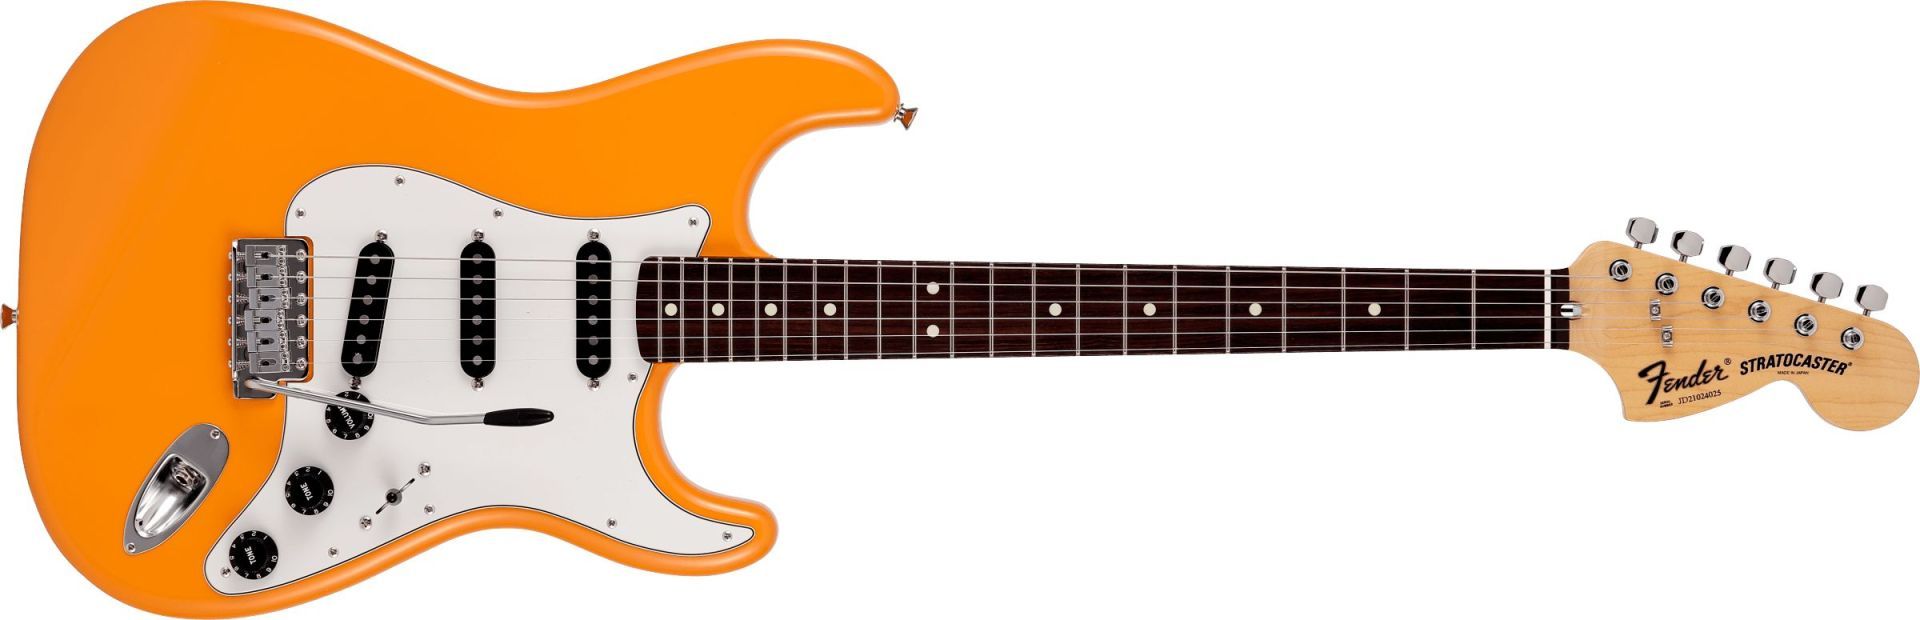 Fender Made in Japan Limited International Color Stratocaster Capri Orange